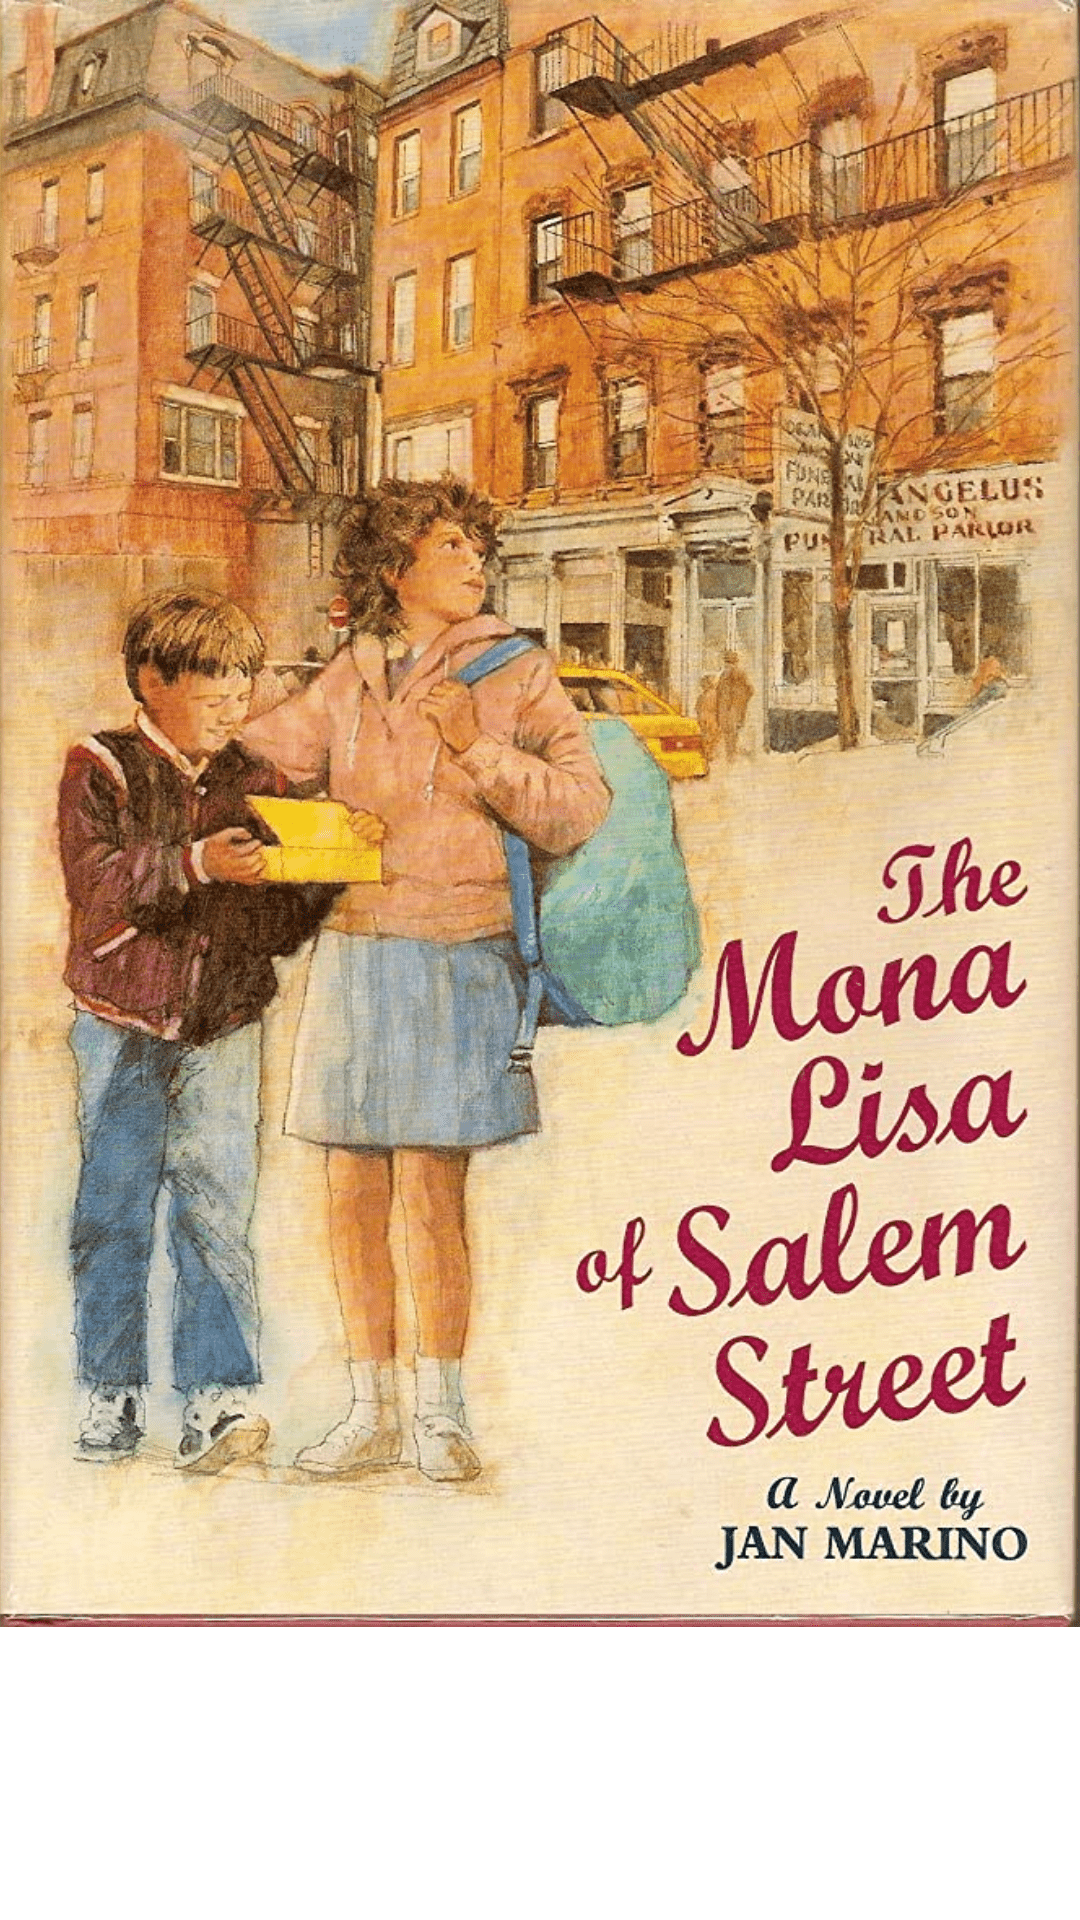 The Mona Lisa of Salem Street